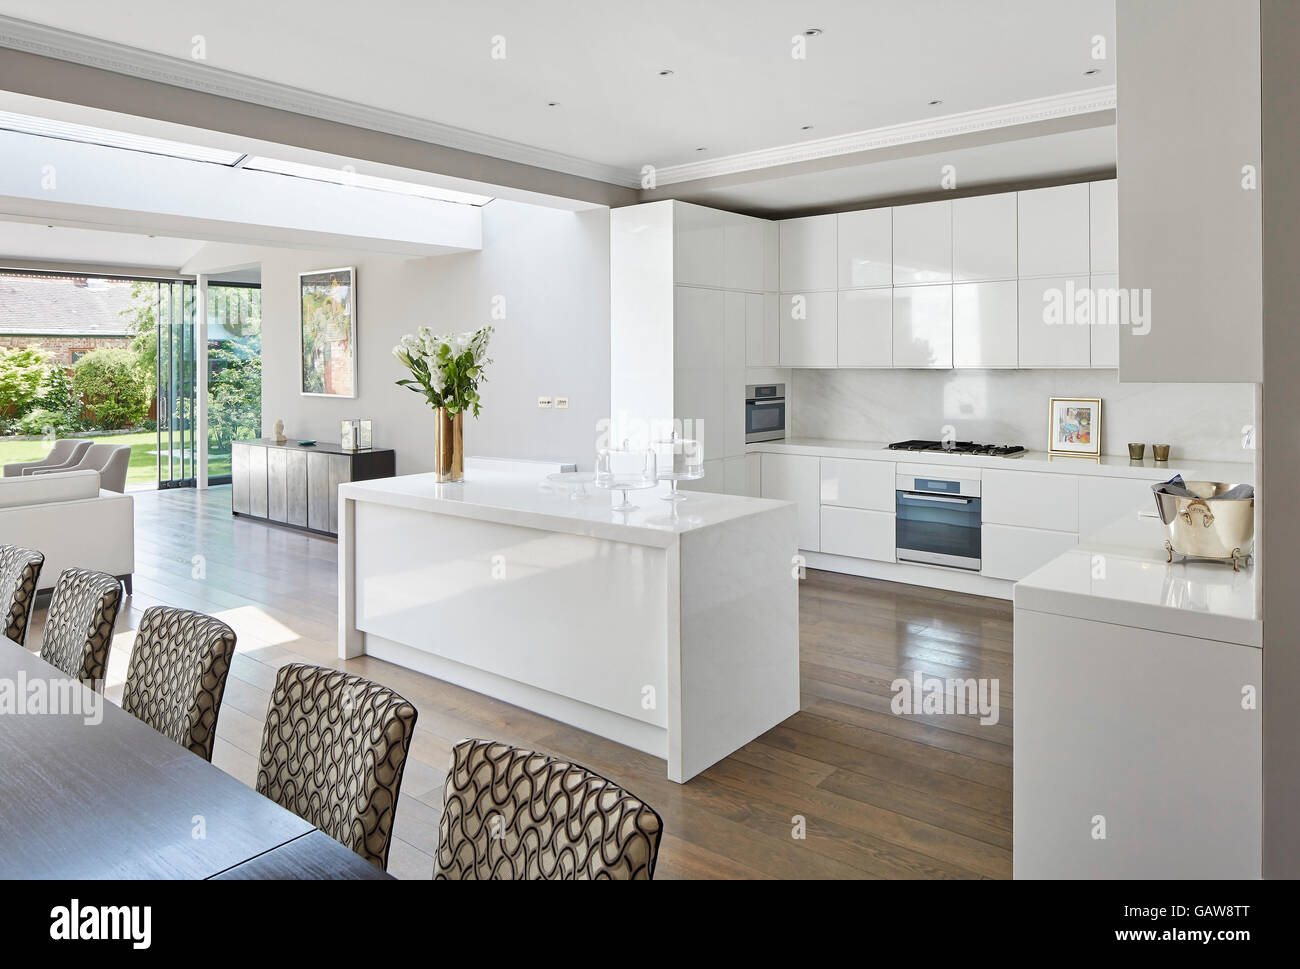 Vista obliqua verso la moderna cucina bianca interno fiera con pavimenti in legno. Casa privata, Highlever Road, Londra, Regno Unito. Architetto: Sophie Nguyen architetti, 2015. Foto Stock